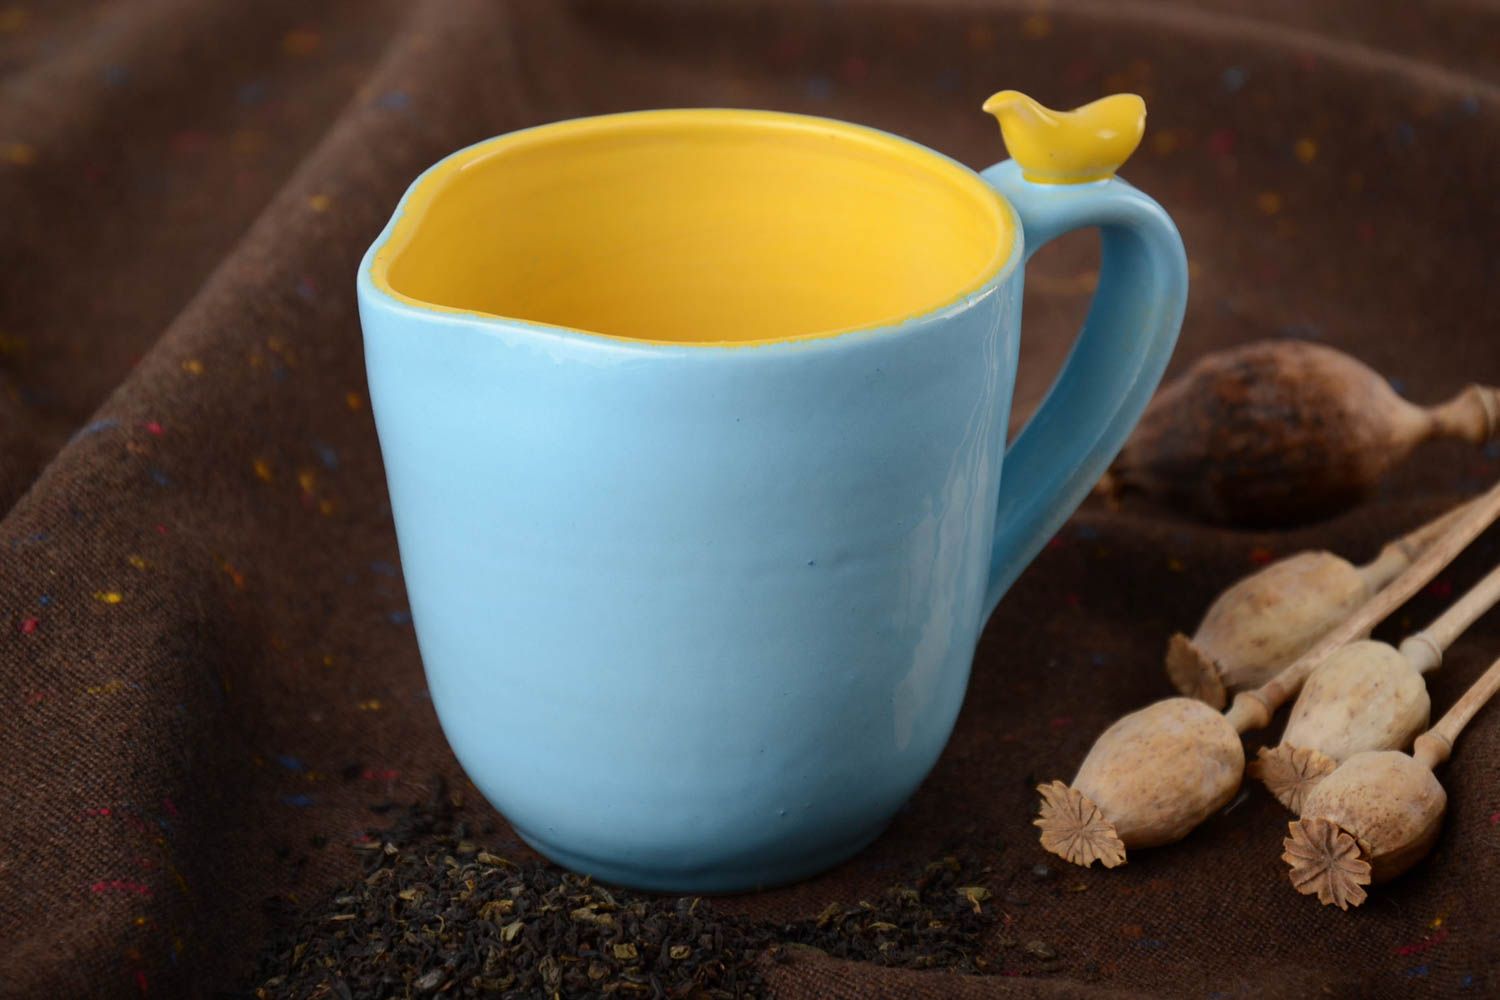 Глиняная чашка ручной работы расписанная глазурью и эмалью 400 мл желто-голубая фото 1